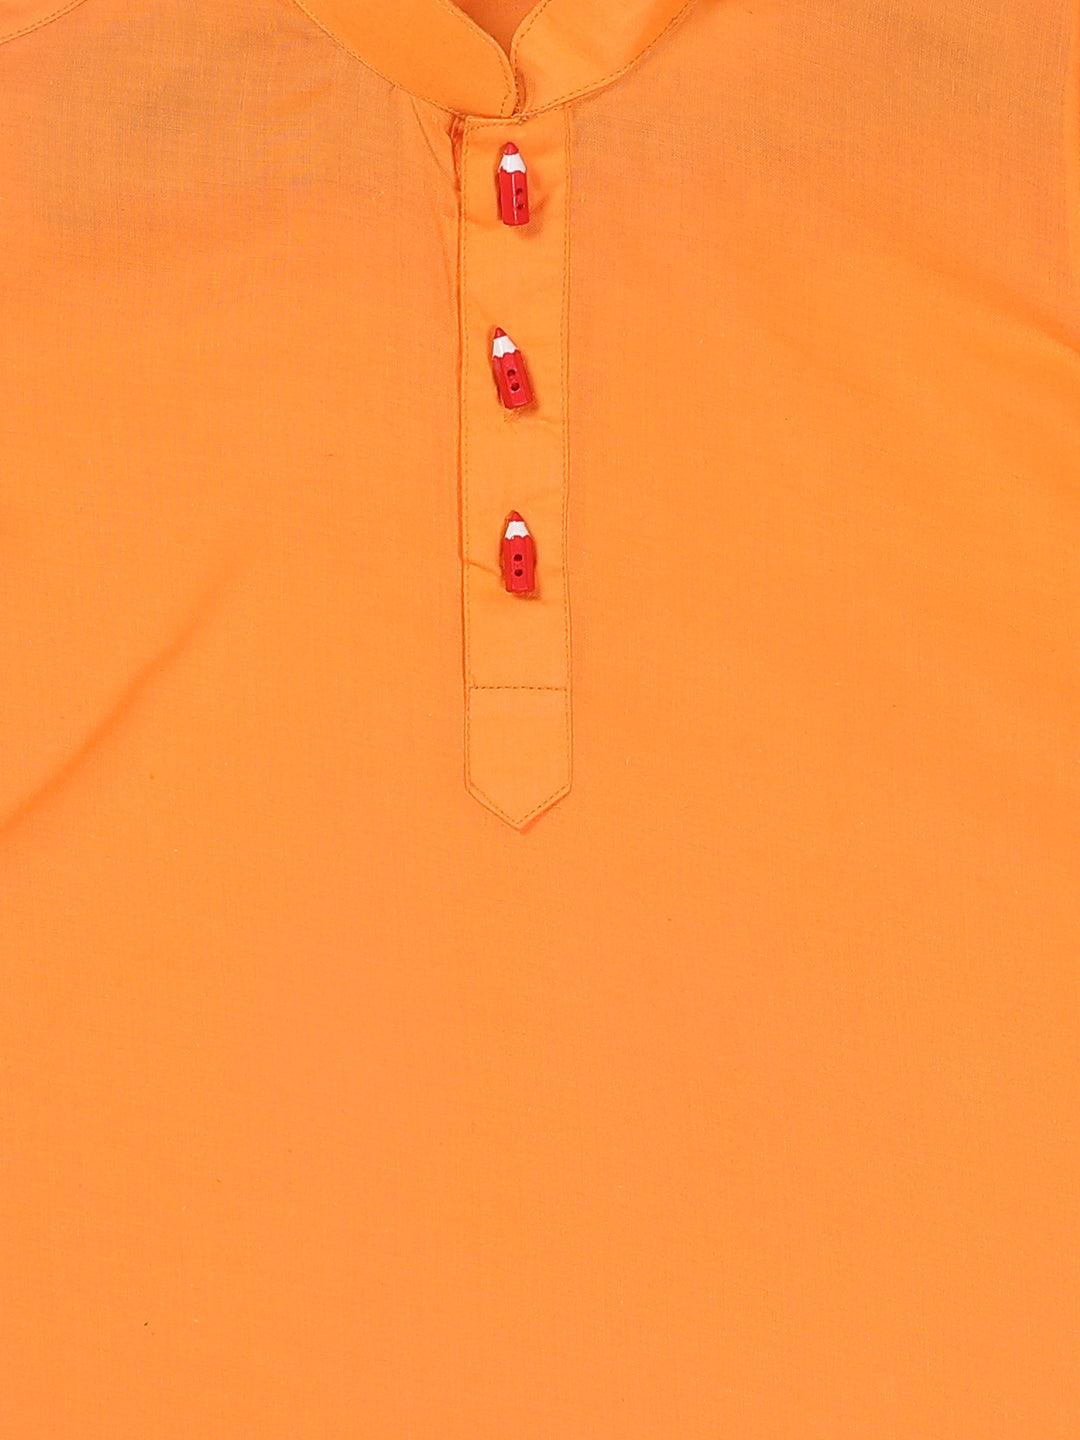 VASTRAMAY SISHU Boy's Orange Kurta - Uboric